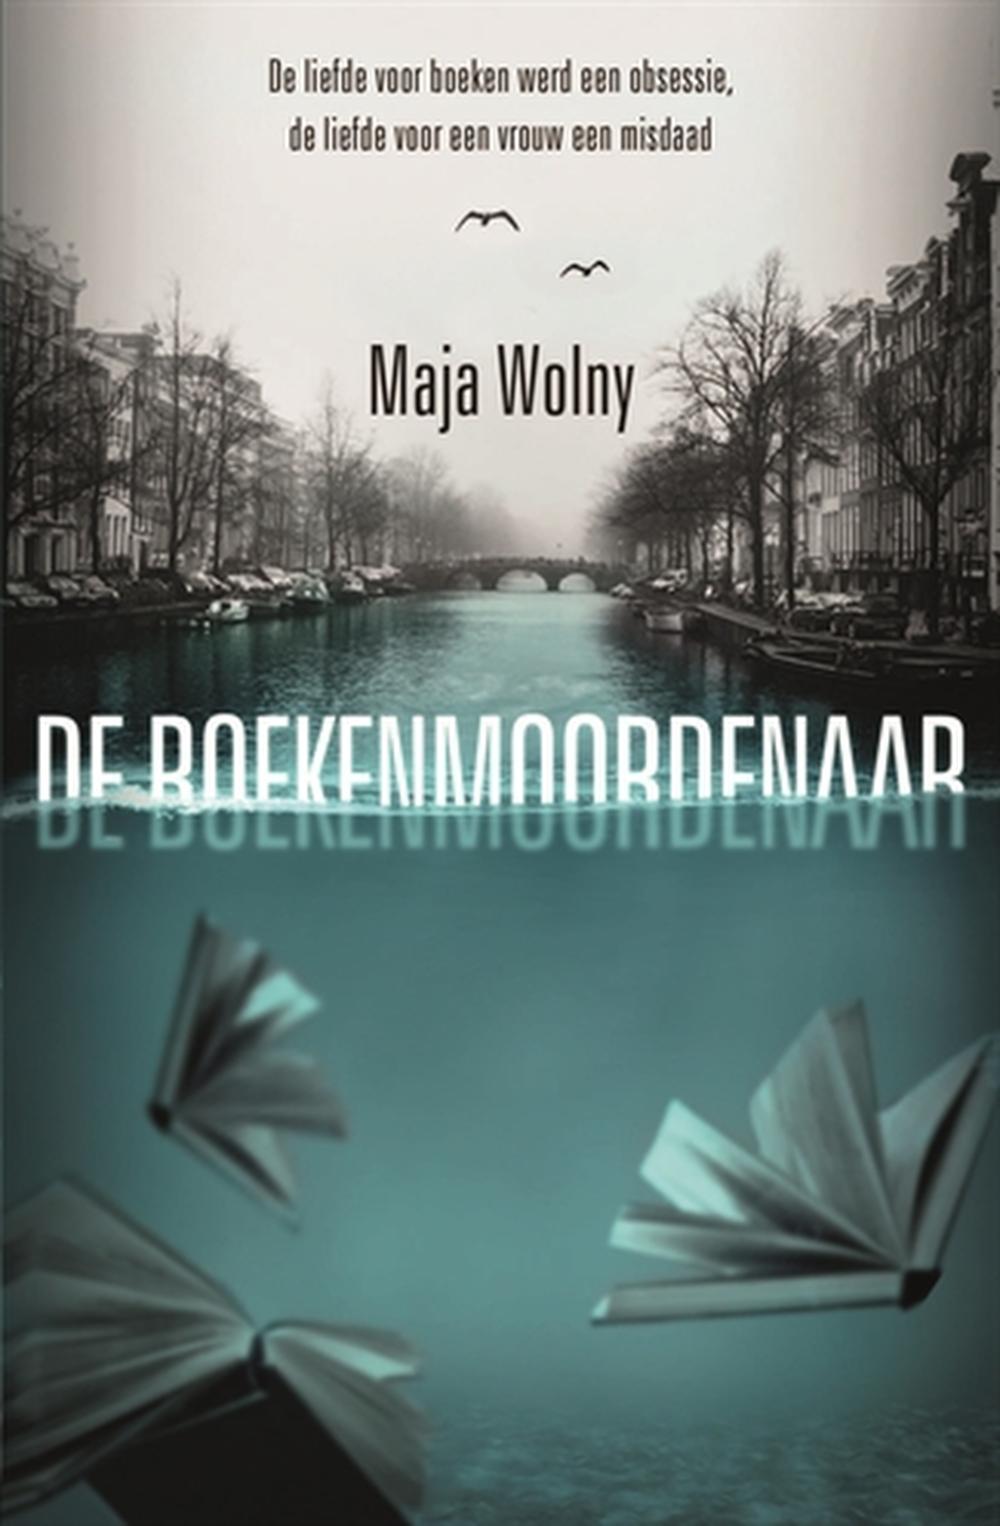 'De Boekenmoordenaar', Maja Wolny's eerste thriller